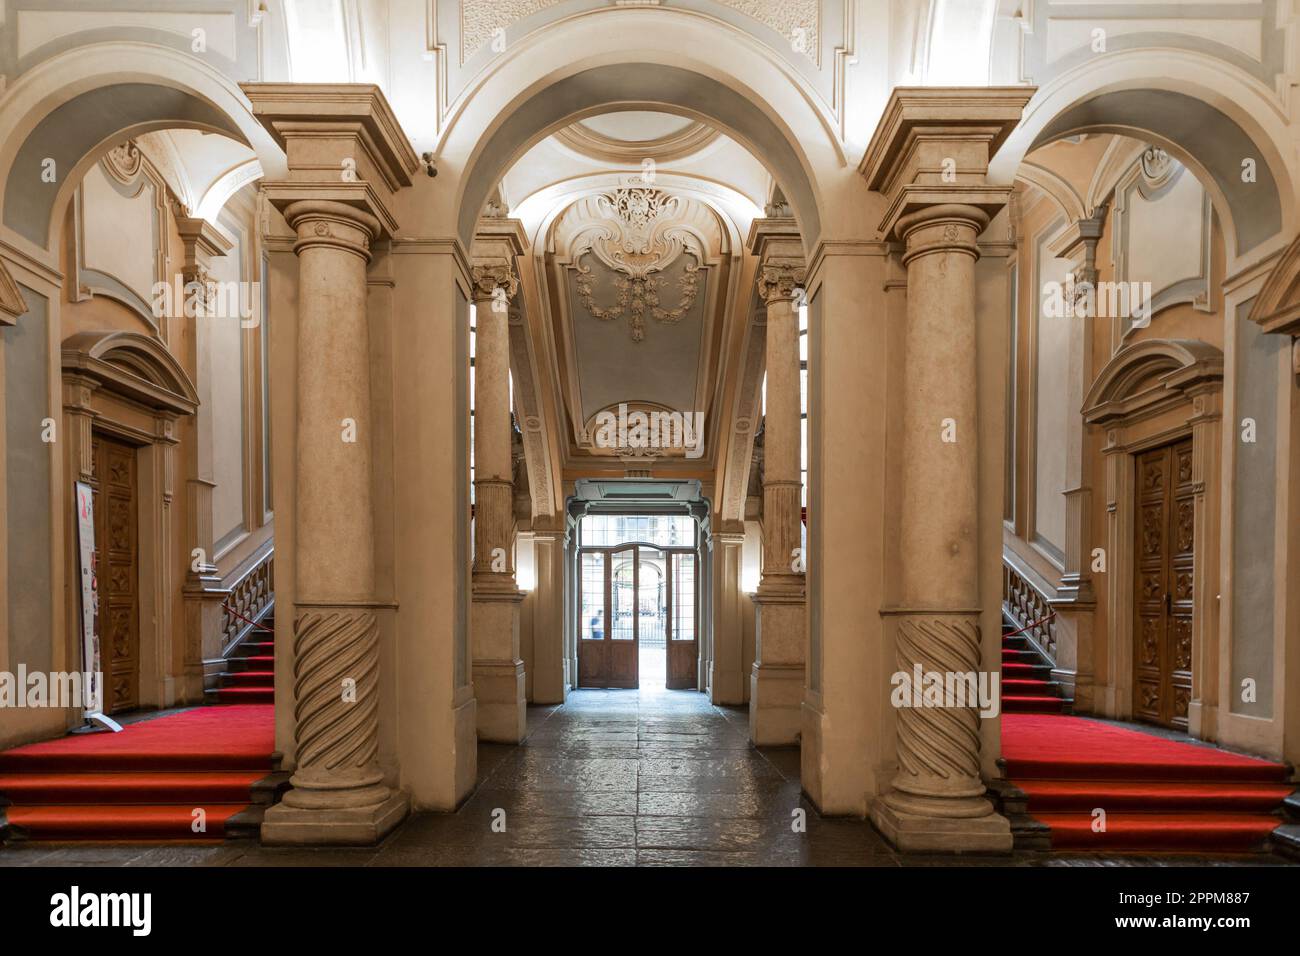 Turin, Italie - escalier Palazzo Barolo. Palais de luxe avec intérieur baroque ancien et tapis rouge Banque D'Images